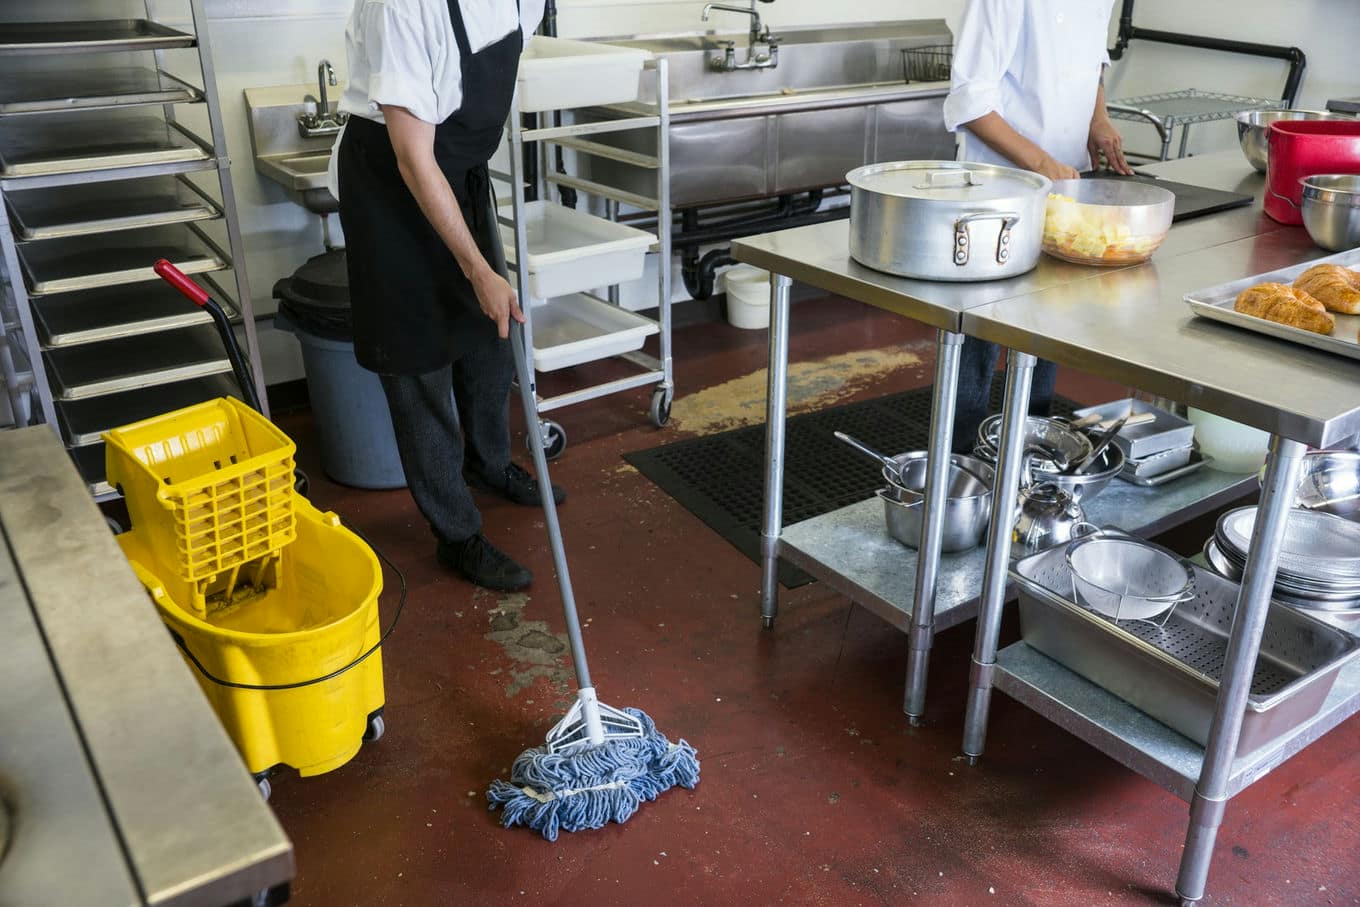 pracownik kuchni myje podłogę